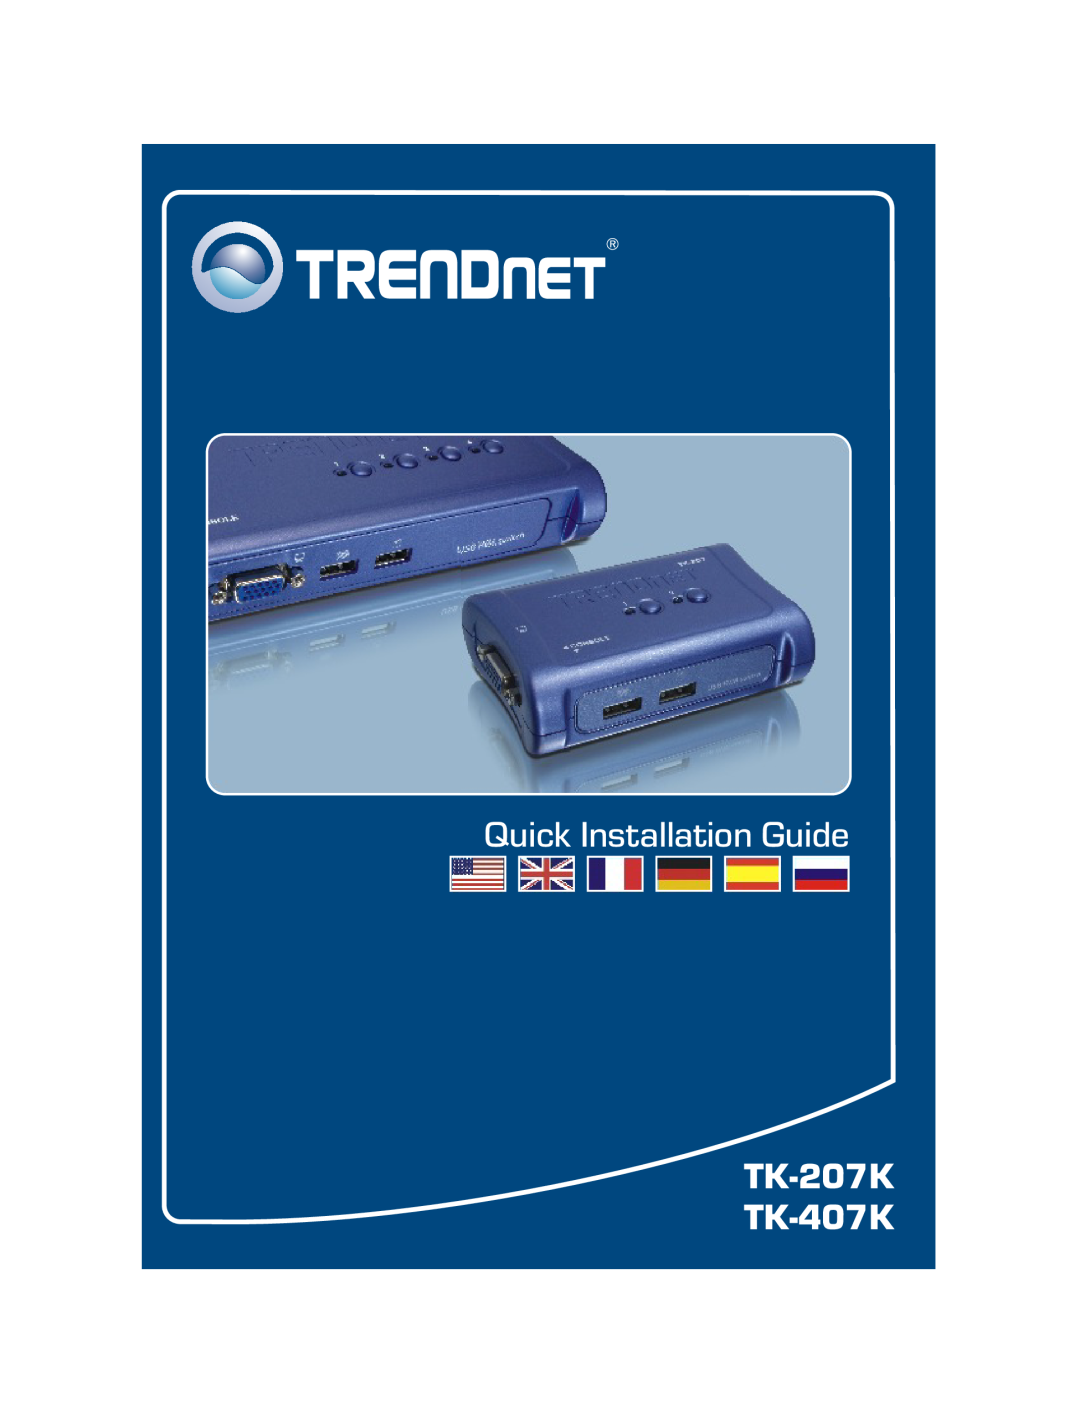 TRENDnet TK-407K manual Quick Installation Guide 